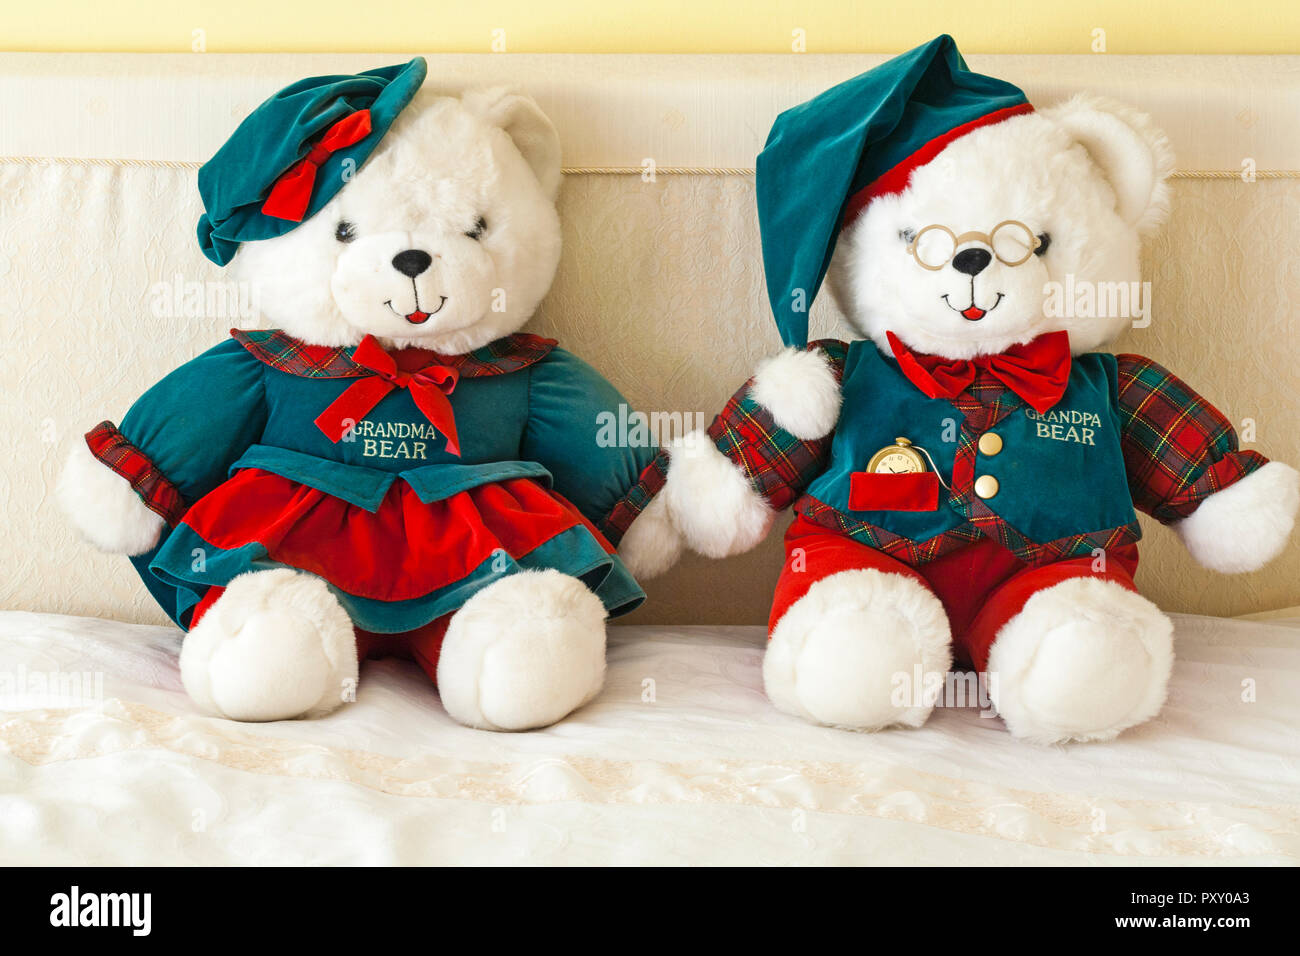 Teddybären - Großeltern limitierte Edition von DanDee - Oma und Opa Bär teddy Bären teddies weiche Kuscheltiere Stockfoto